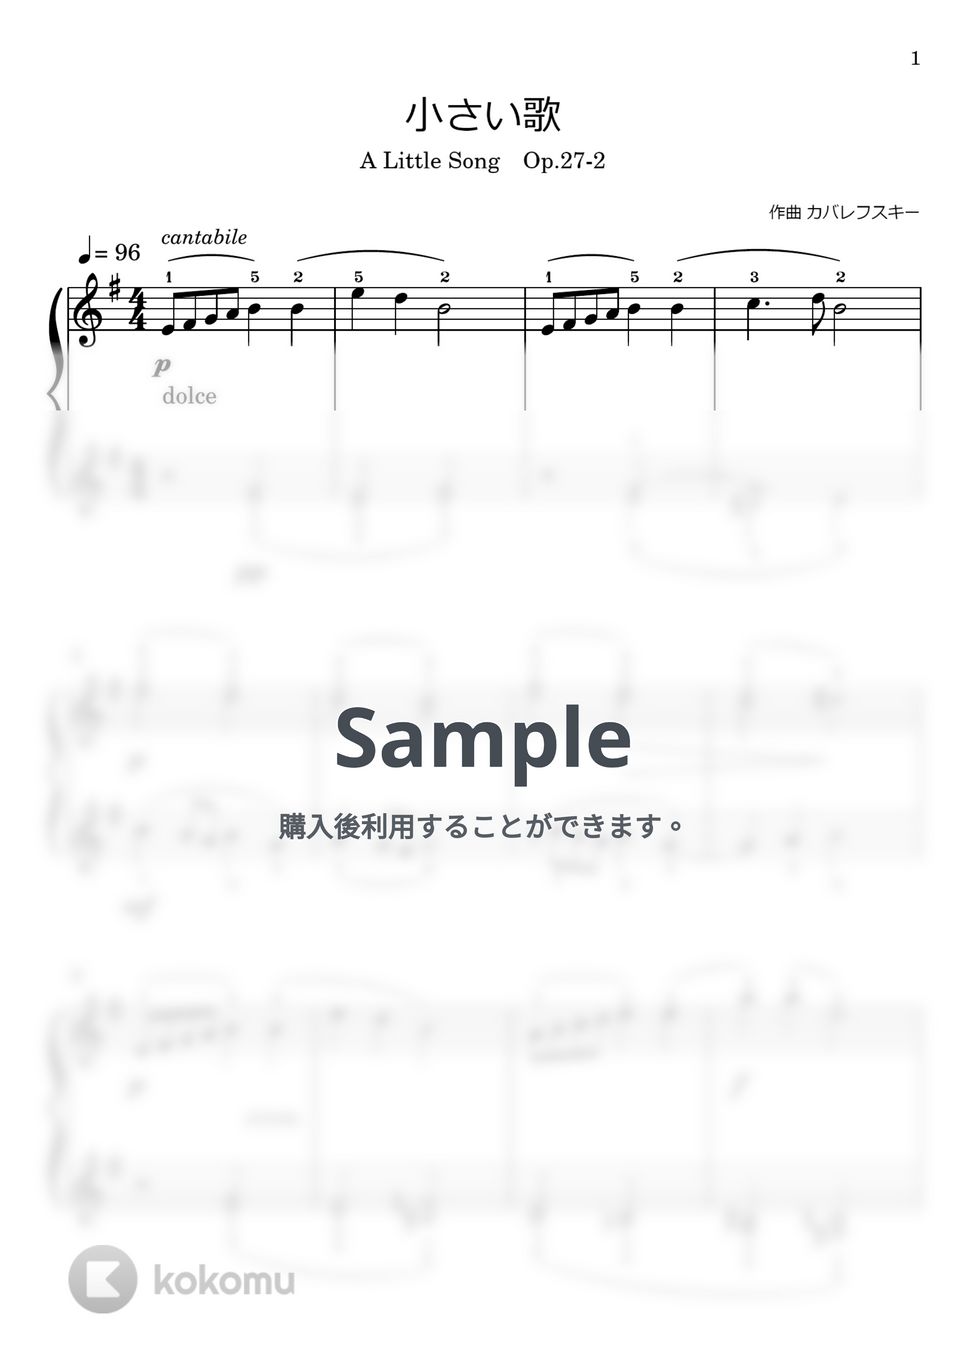 カバレフスキー - 小さい歌 by Watanabe